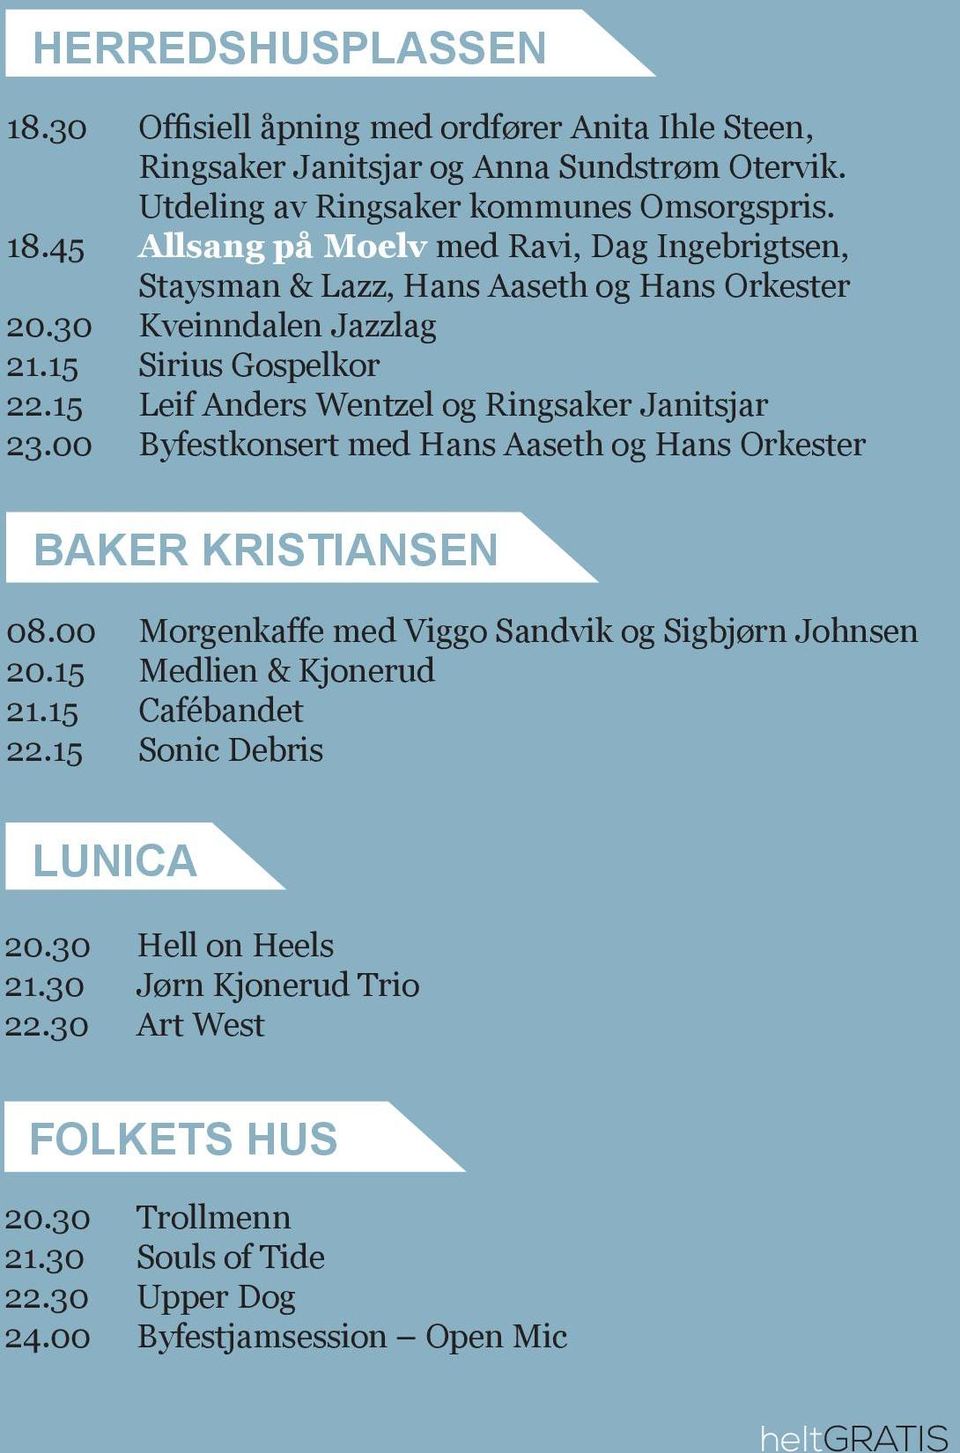 00 Morgenkaffe med Viggo Sandvik og Sigbjørn Johnsen 20.15 Medlien & Kjonerud 21.15 Cafébandet 22.15 Sonic Debris LUNICA 20.30 Hell on Heels 21.30 Jørn Kjonerud Trio 22.